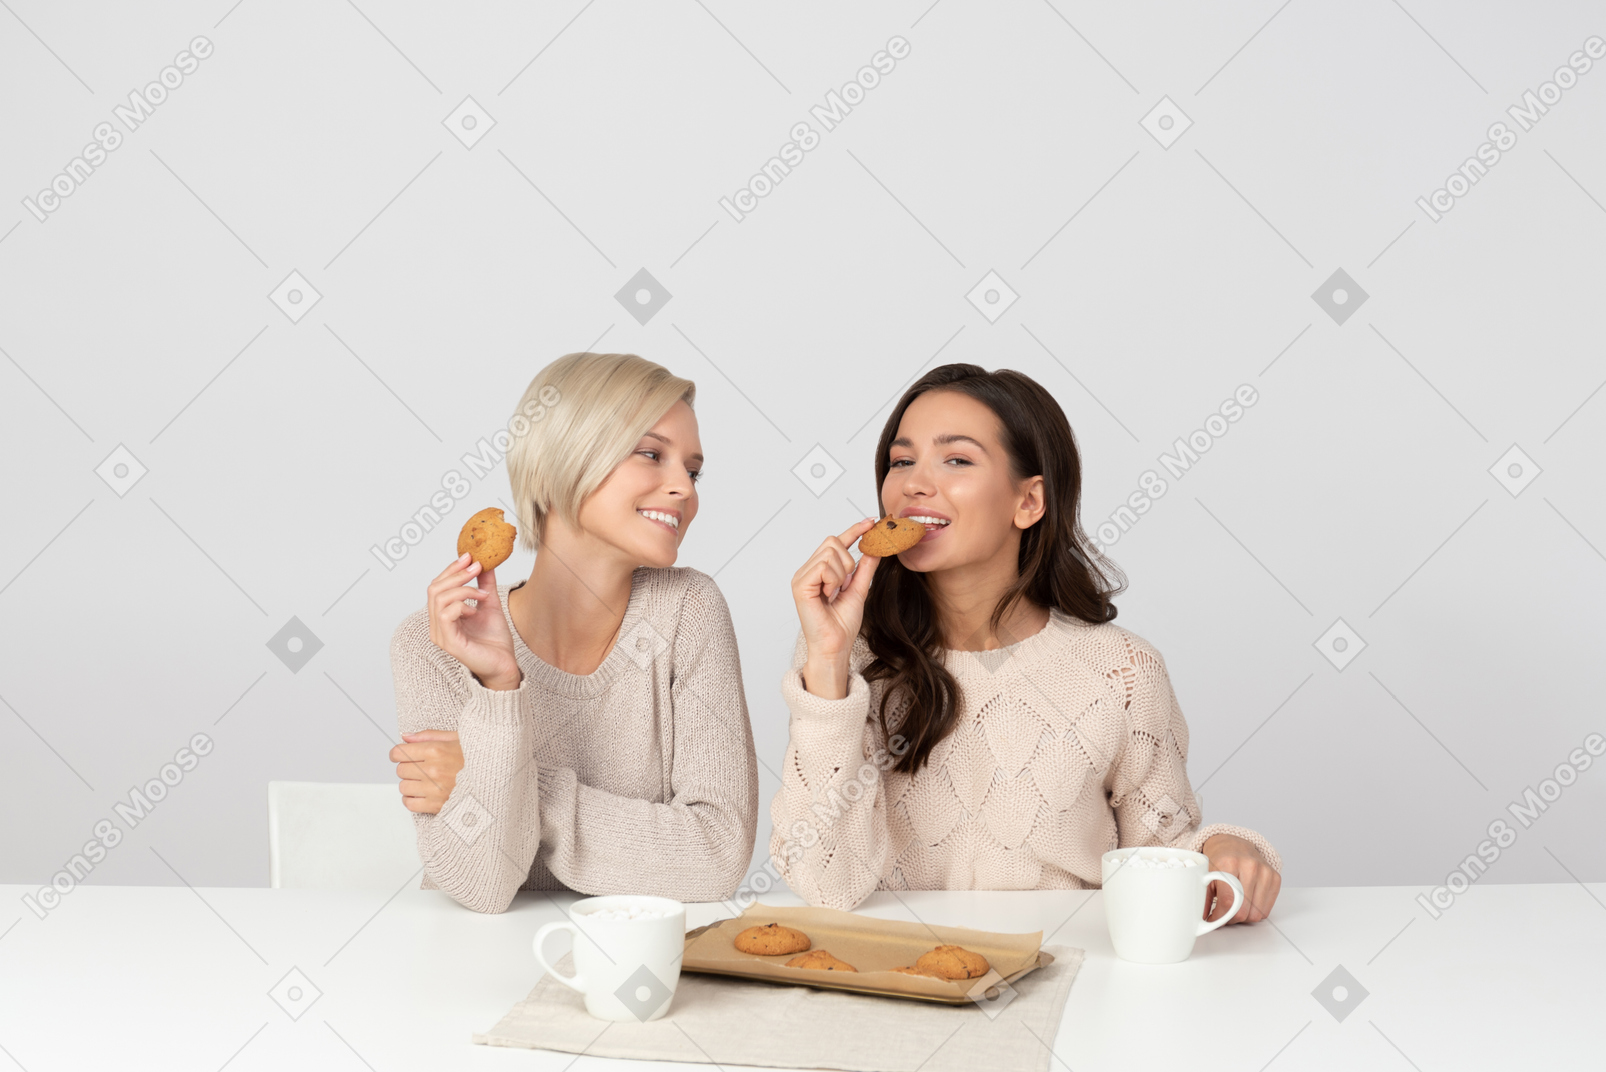 Jeunes femmes mangeant des biscuits et souriant